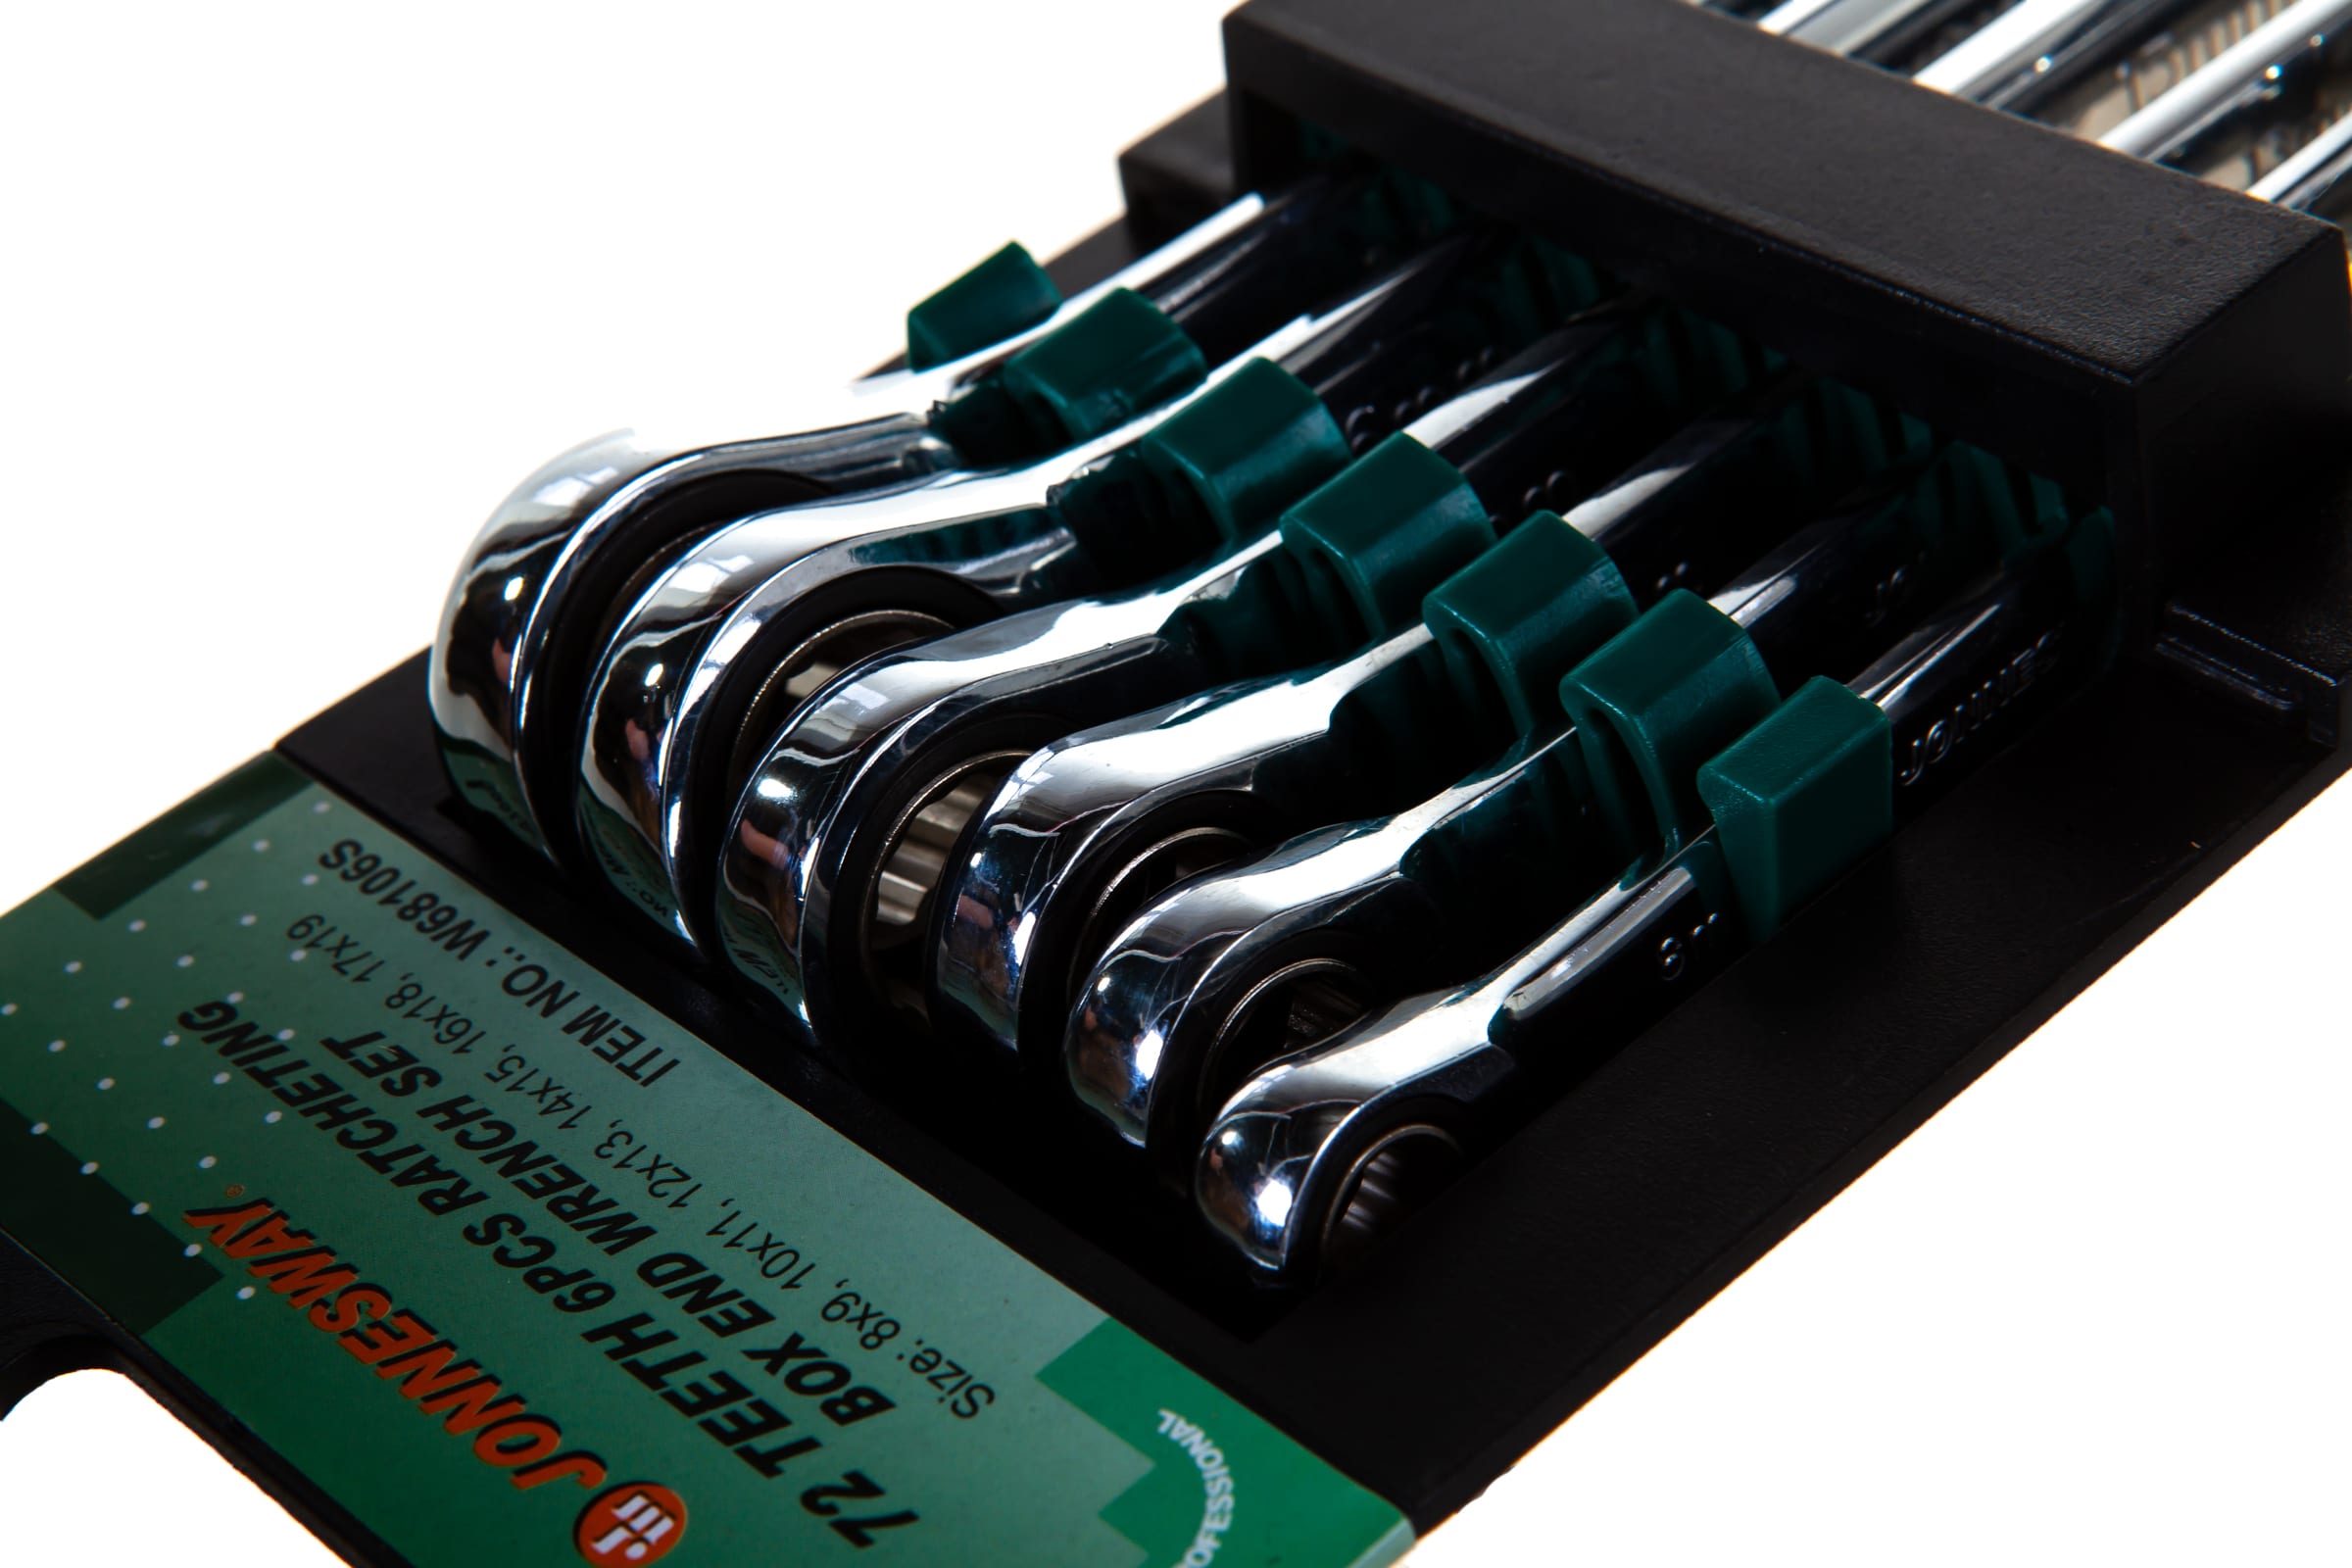 Набор гаечных накидных трещоточных ключей (8-19 мм) Jonnesway W68106S, 6 штук на держателе - фото